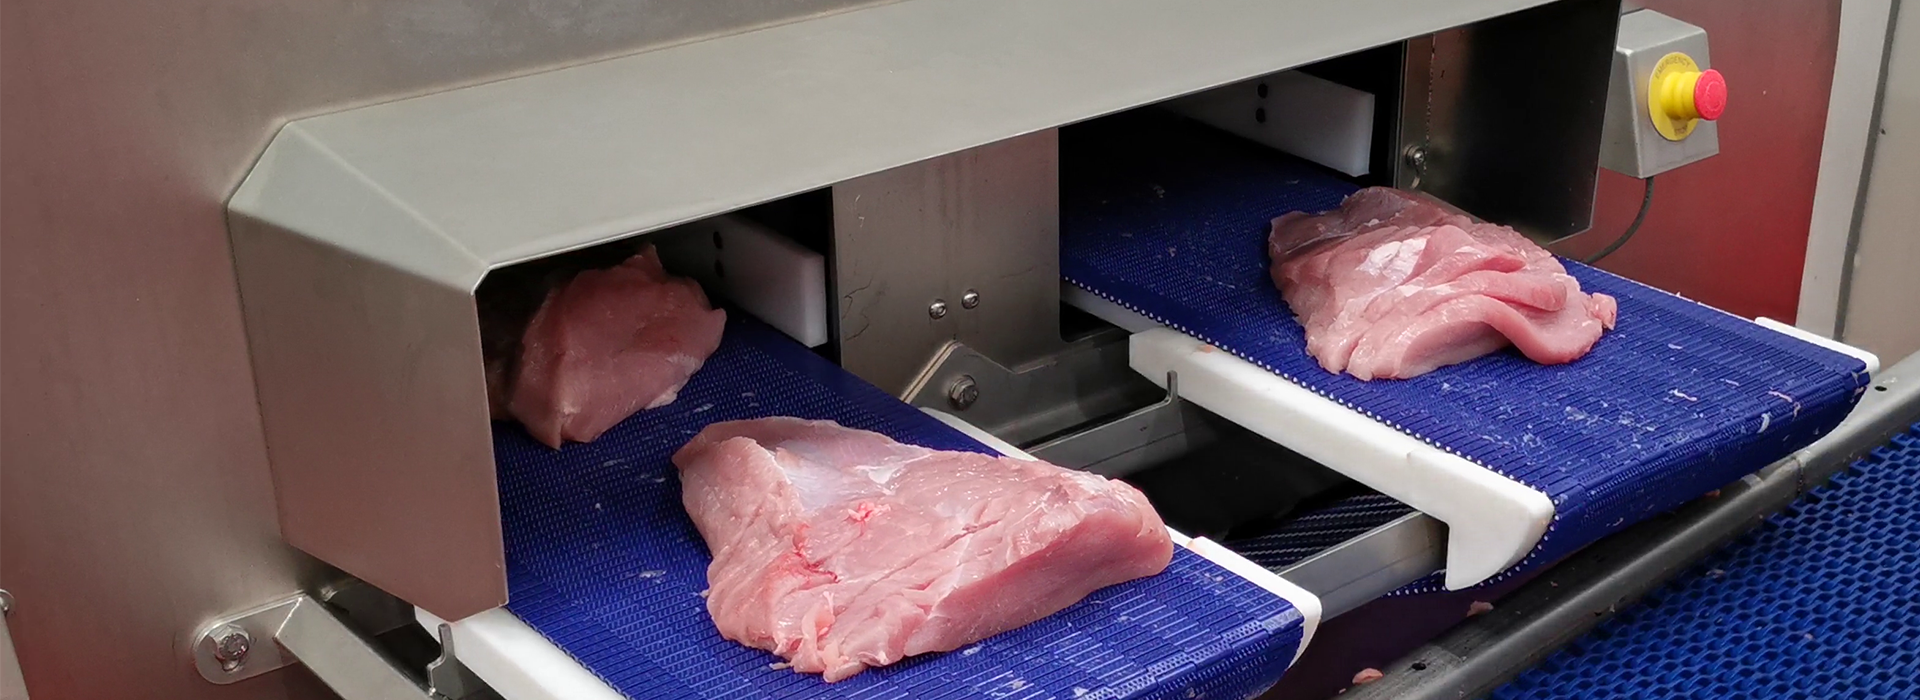 Cortadora de porciones PORTIO 3D para cortar filetes grandes de pollo o pavo